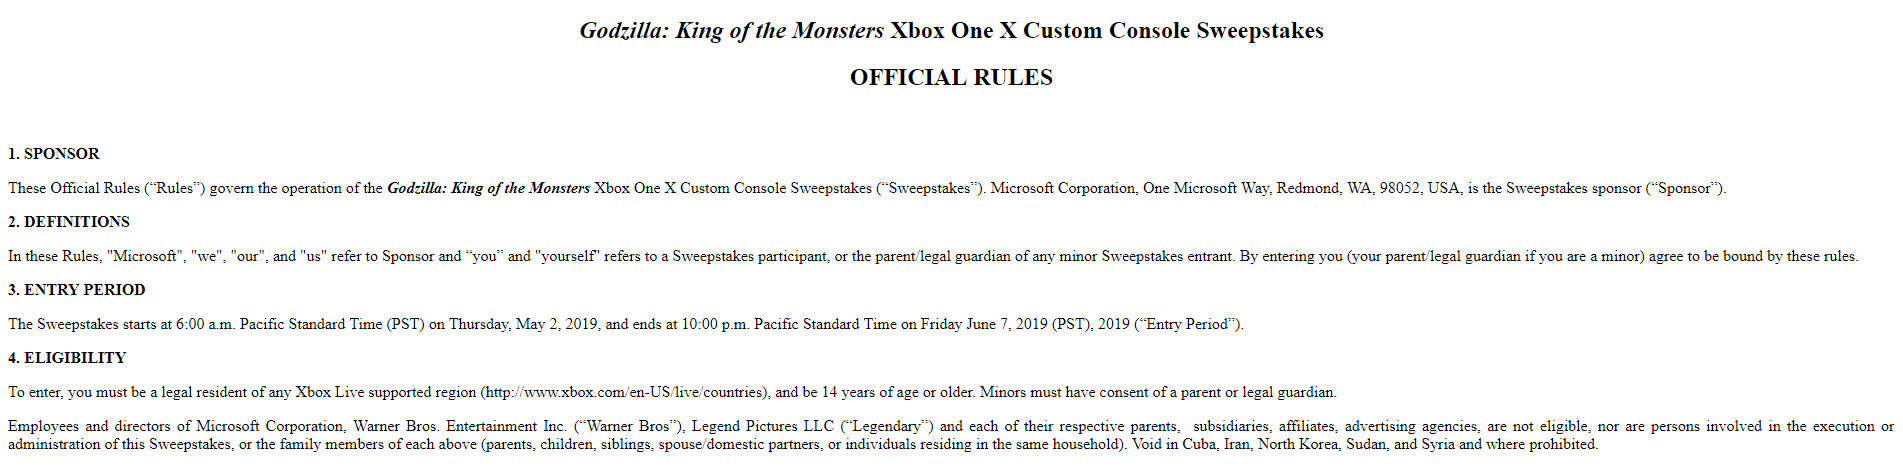 《 哥吉拉 II 怪獸之王 》造型 Xbox One X 特仕主機 限量開放抽獎 - 電腦王阿達